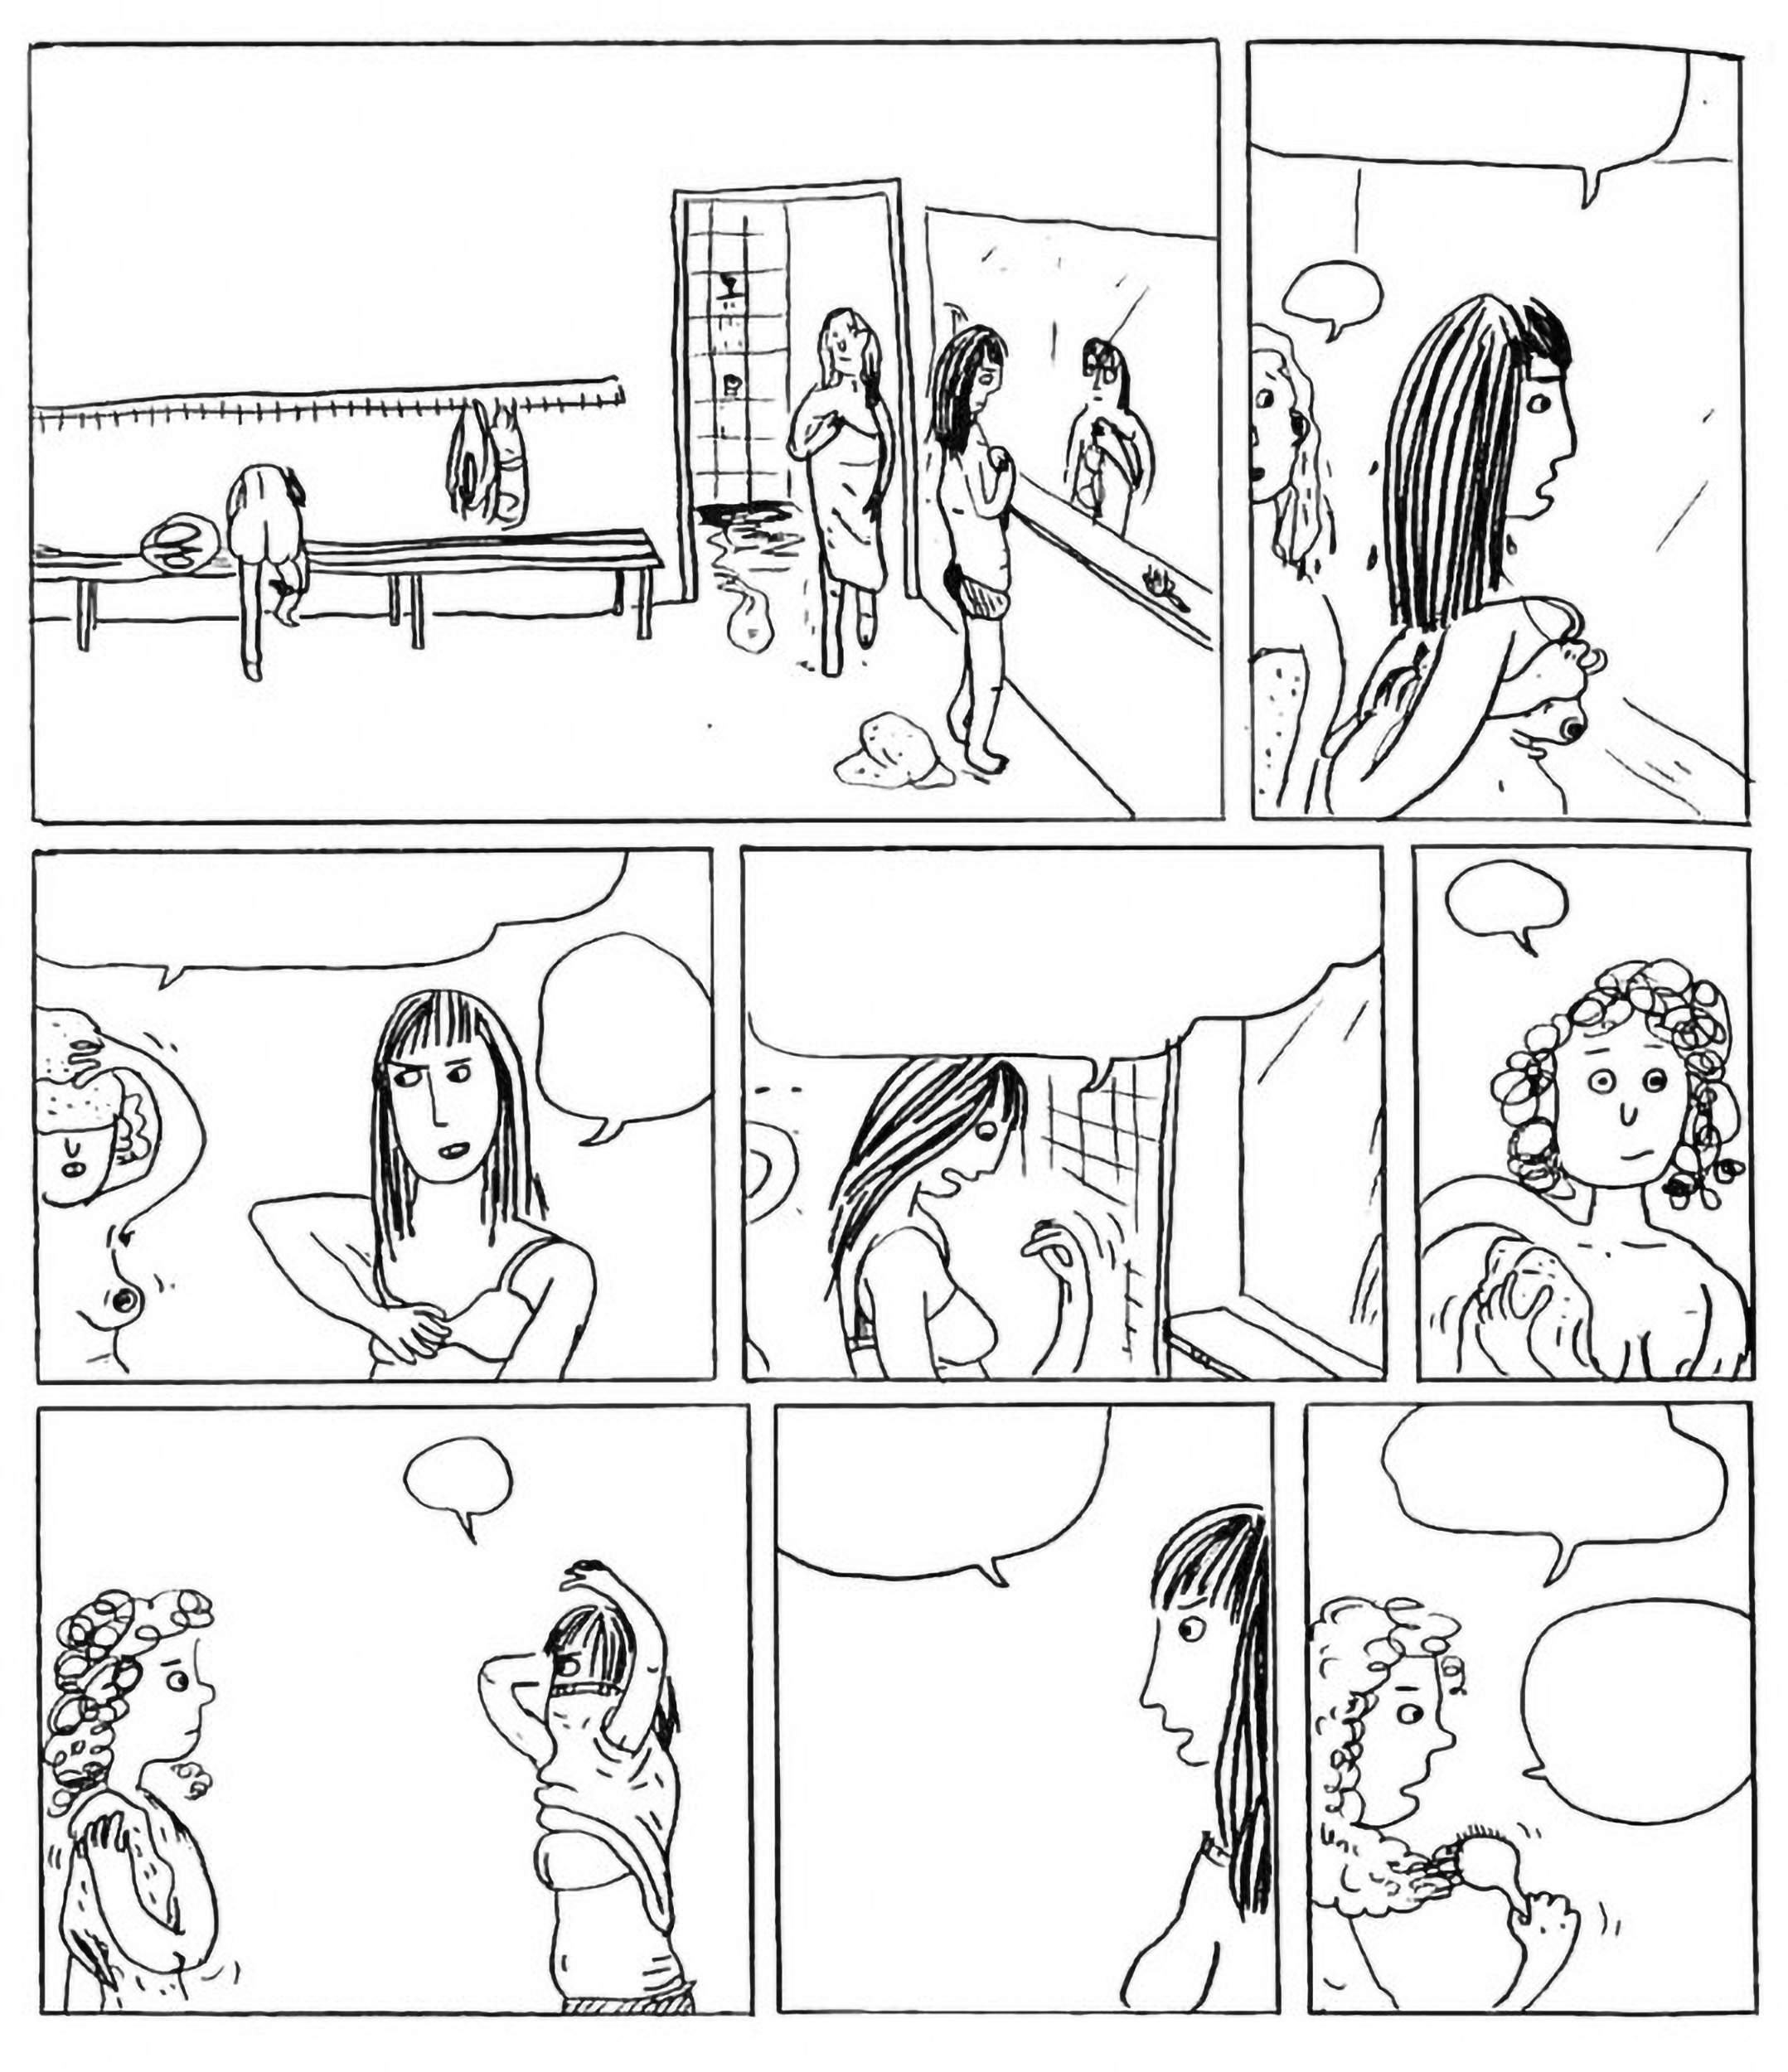 Utdrag fra tegneserien "Fallteknikk" av Inga Sætre (2011), uten verbaltekst.